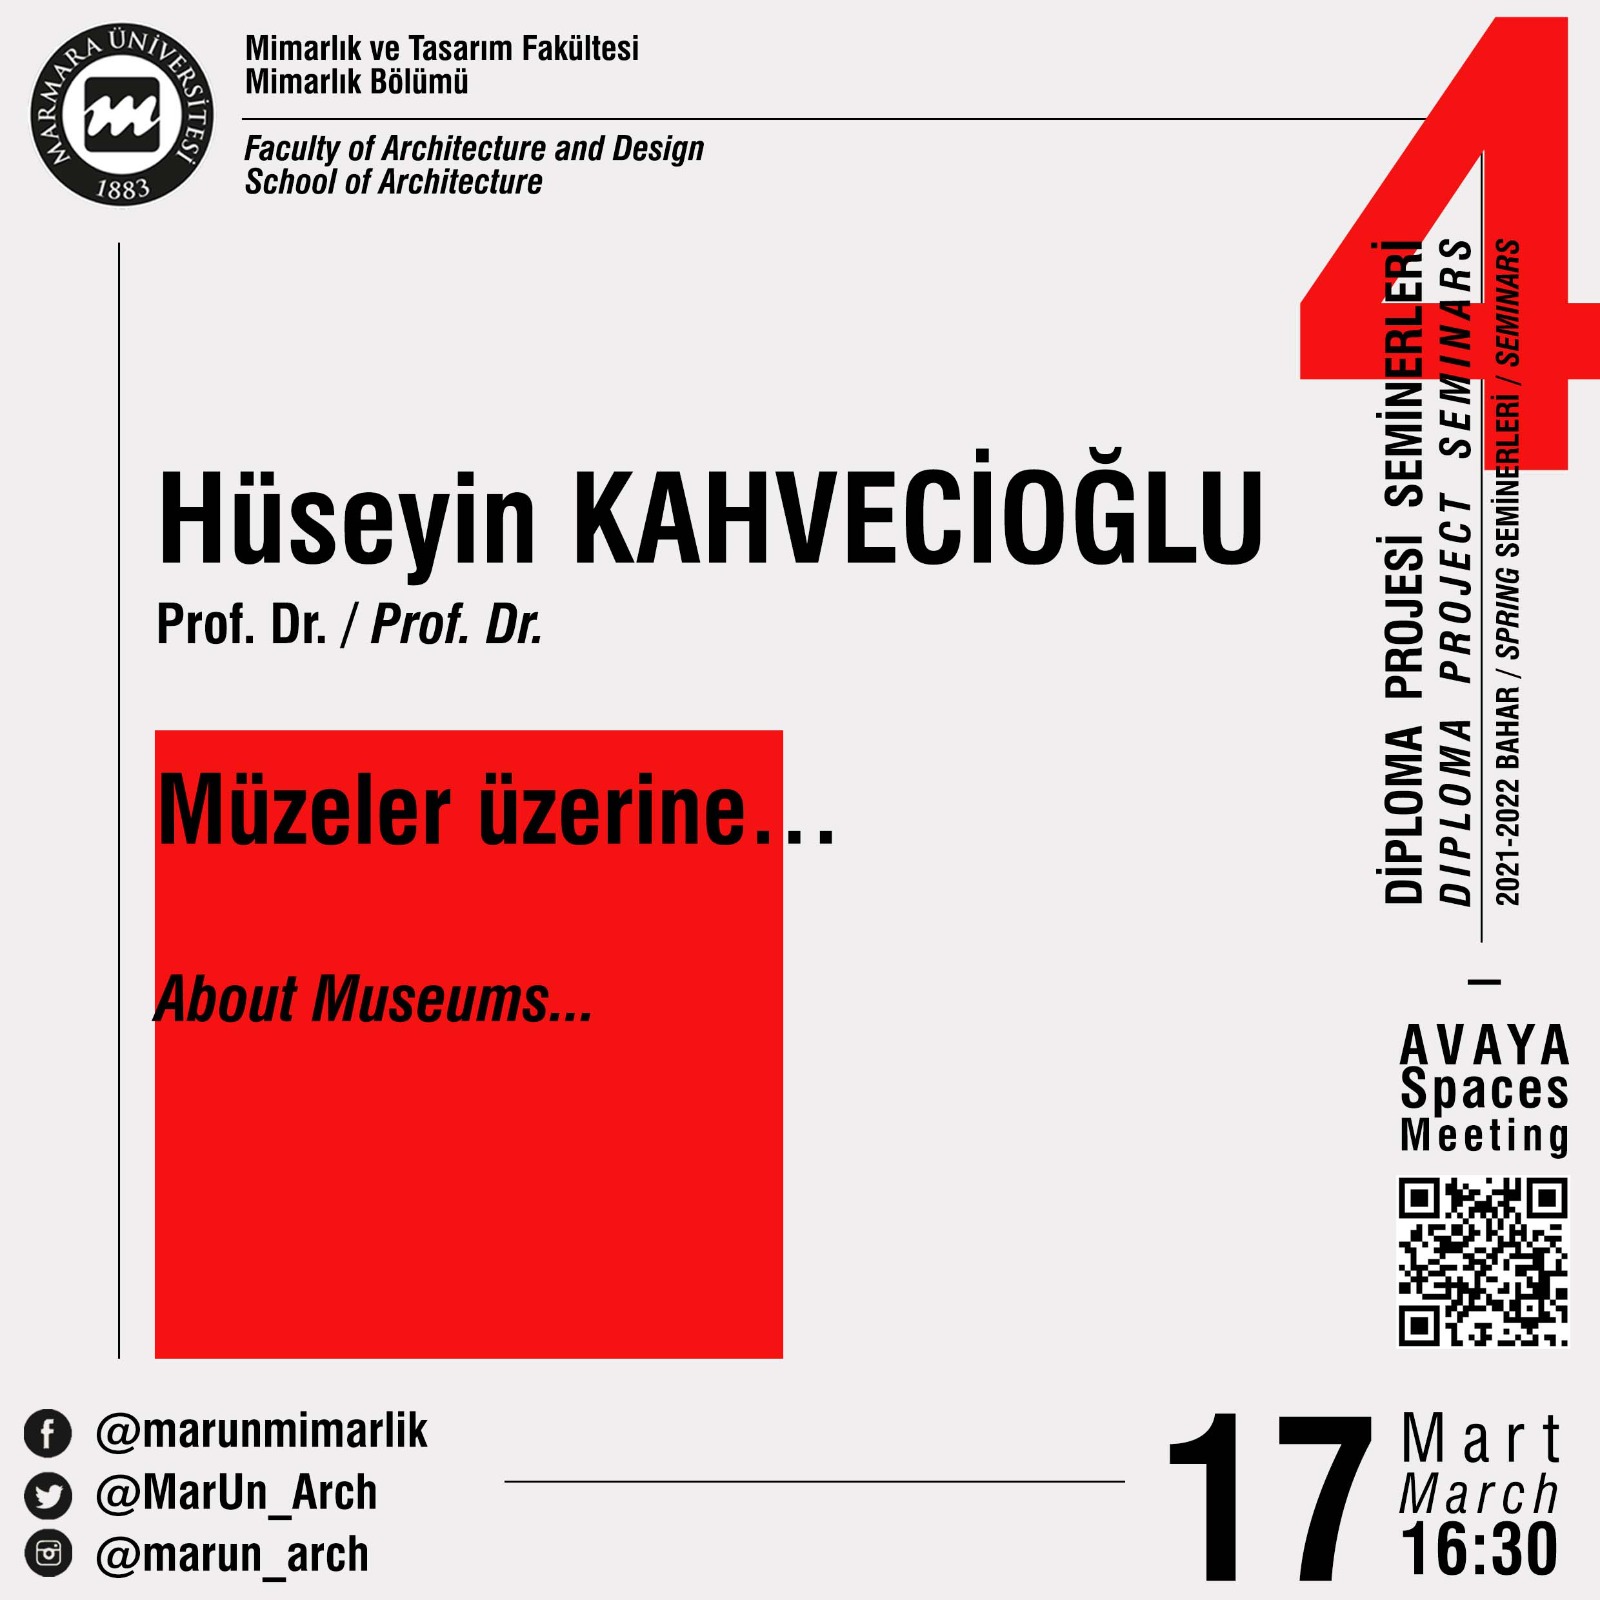 04_Hüseyin Kahvecioğlu.jpeg (240 KB)